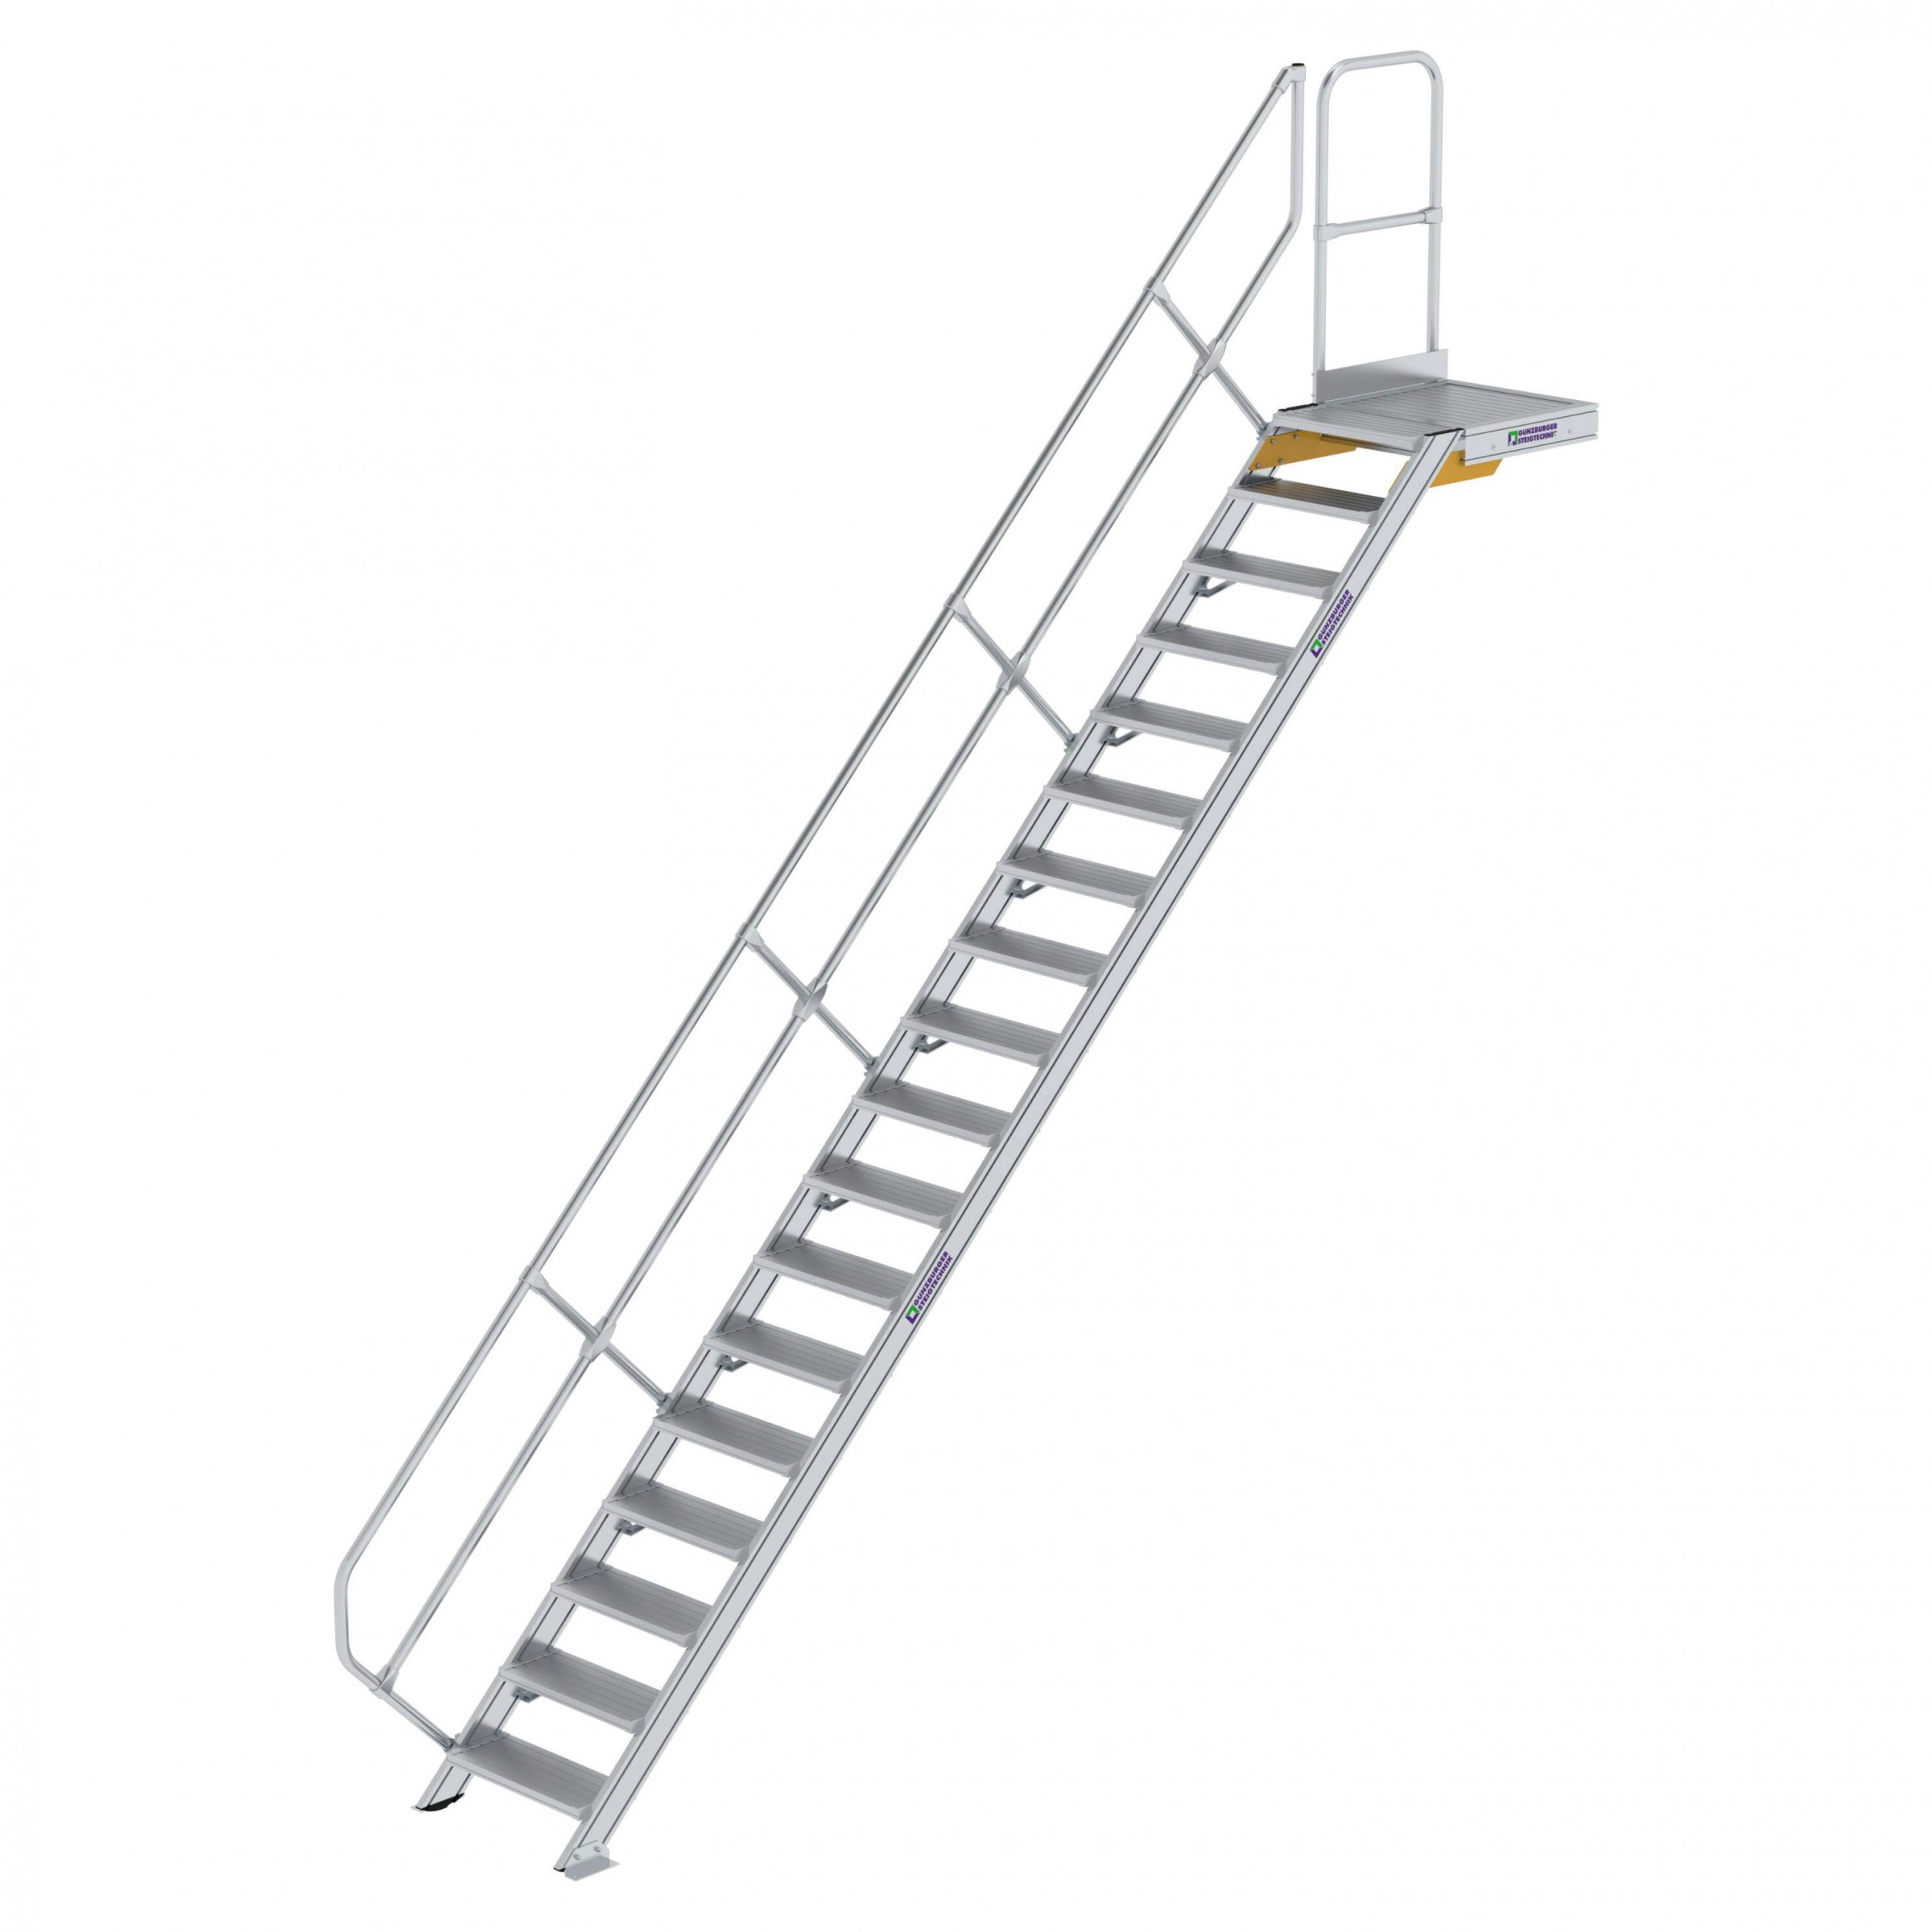 Aluminium-Treppe mit Plattform, 45°, 4 Stufen